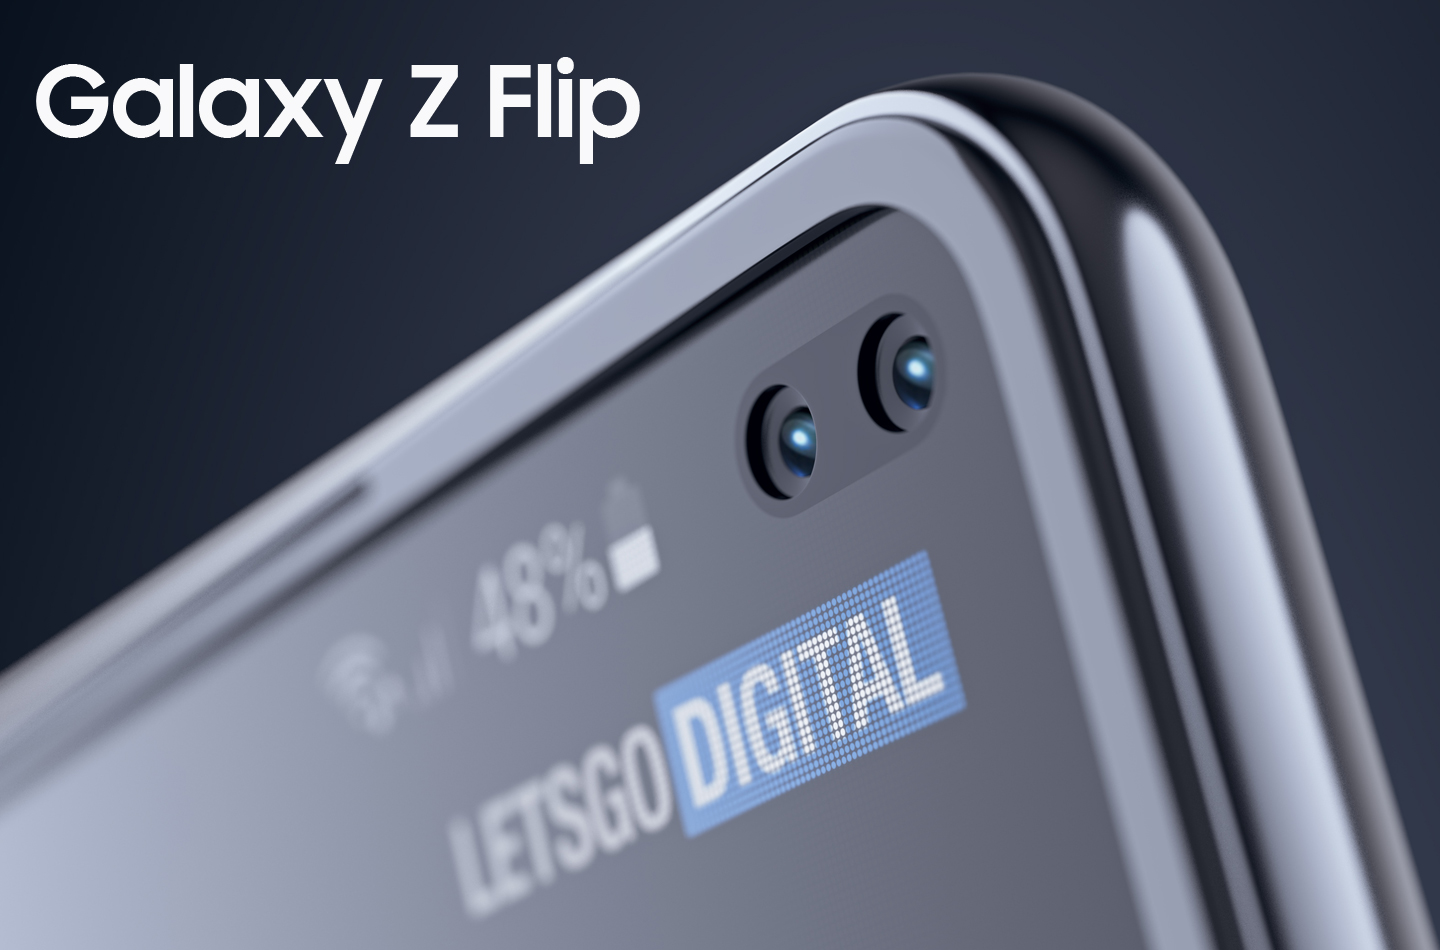 Samsung wymyślił smartfon Galaxy Z Flip, którego ekran składa się w dwóch kierunkach